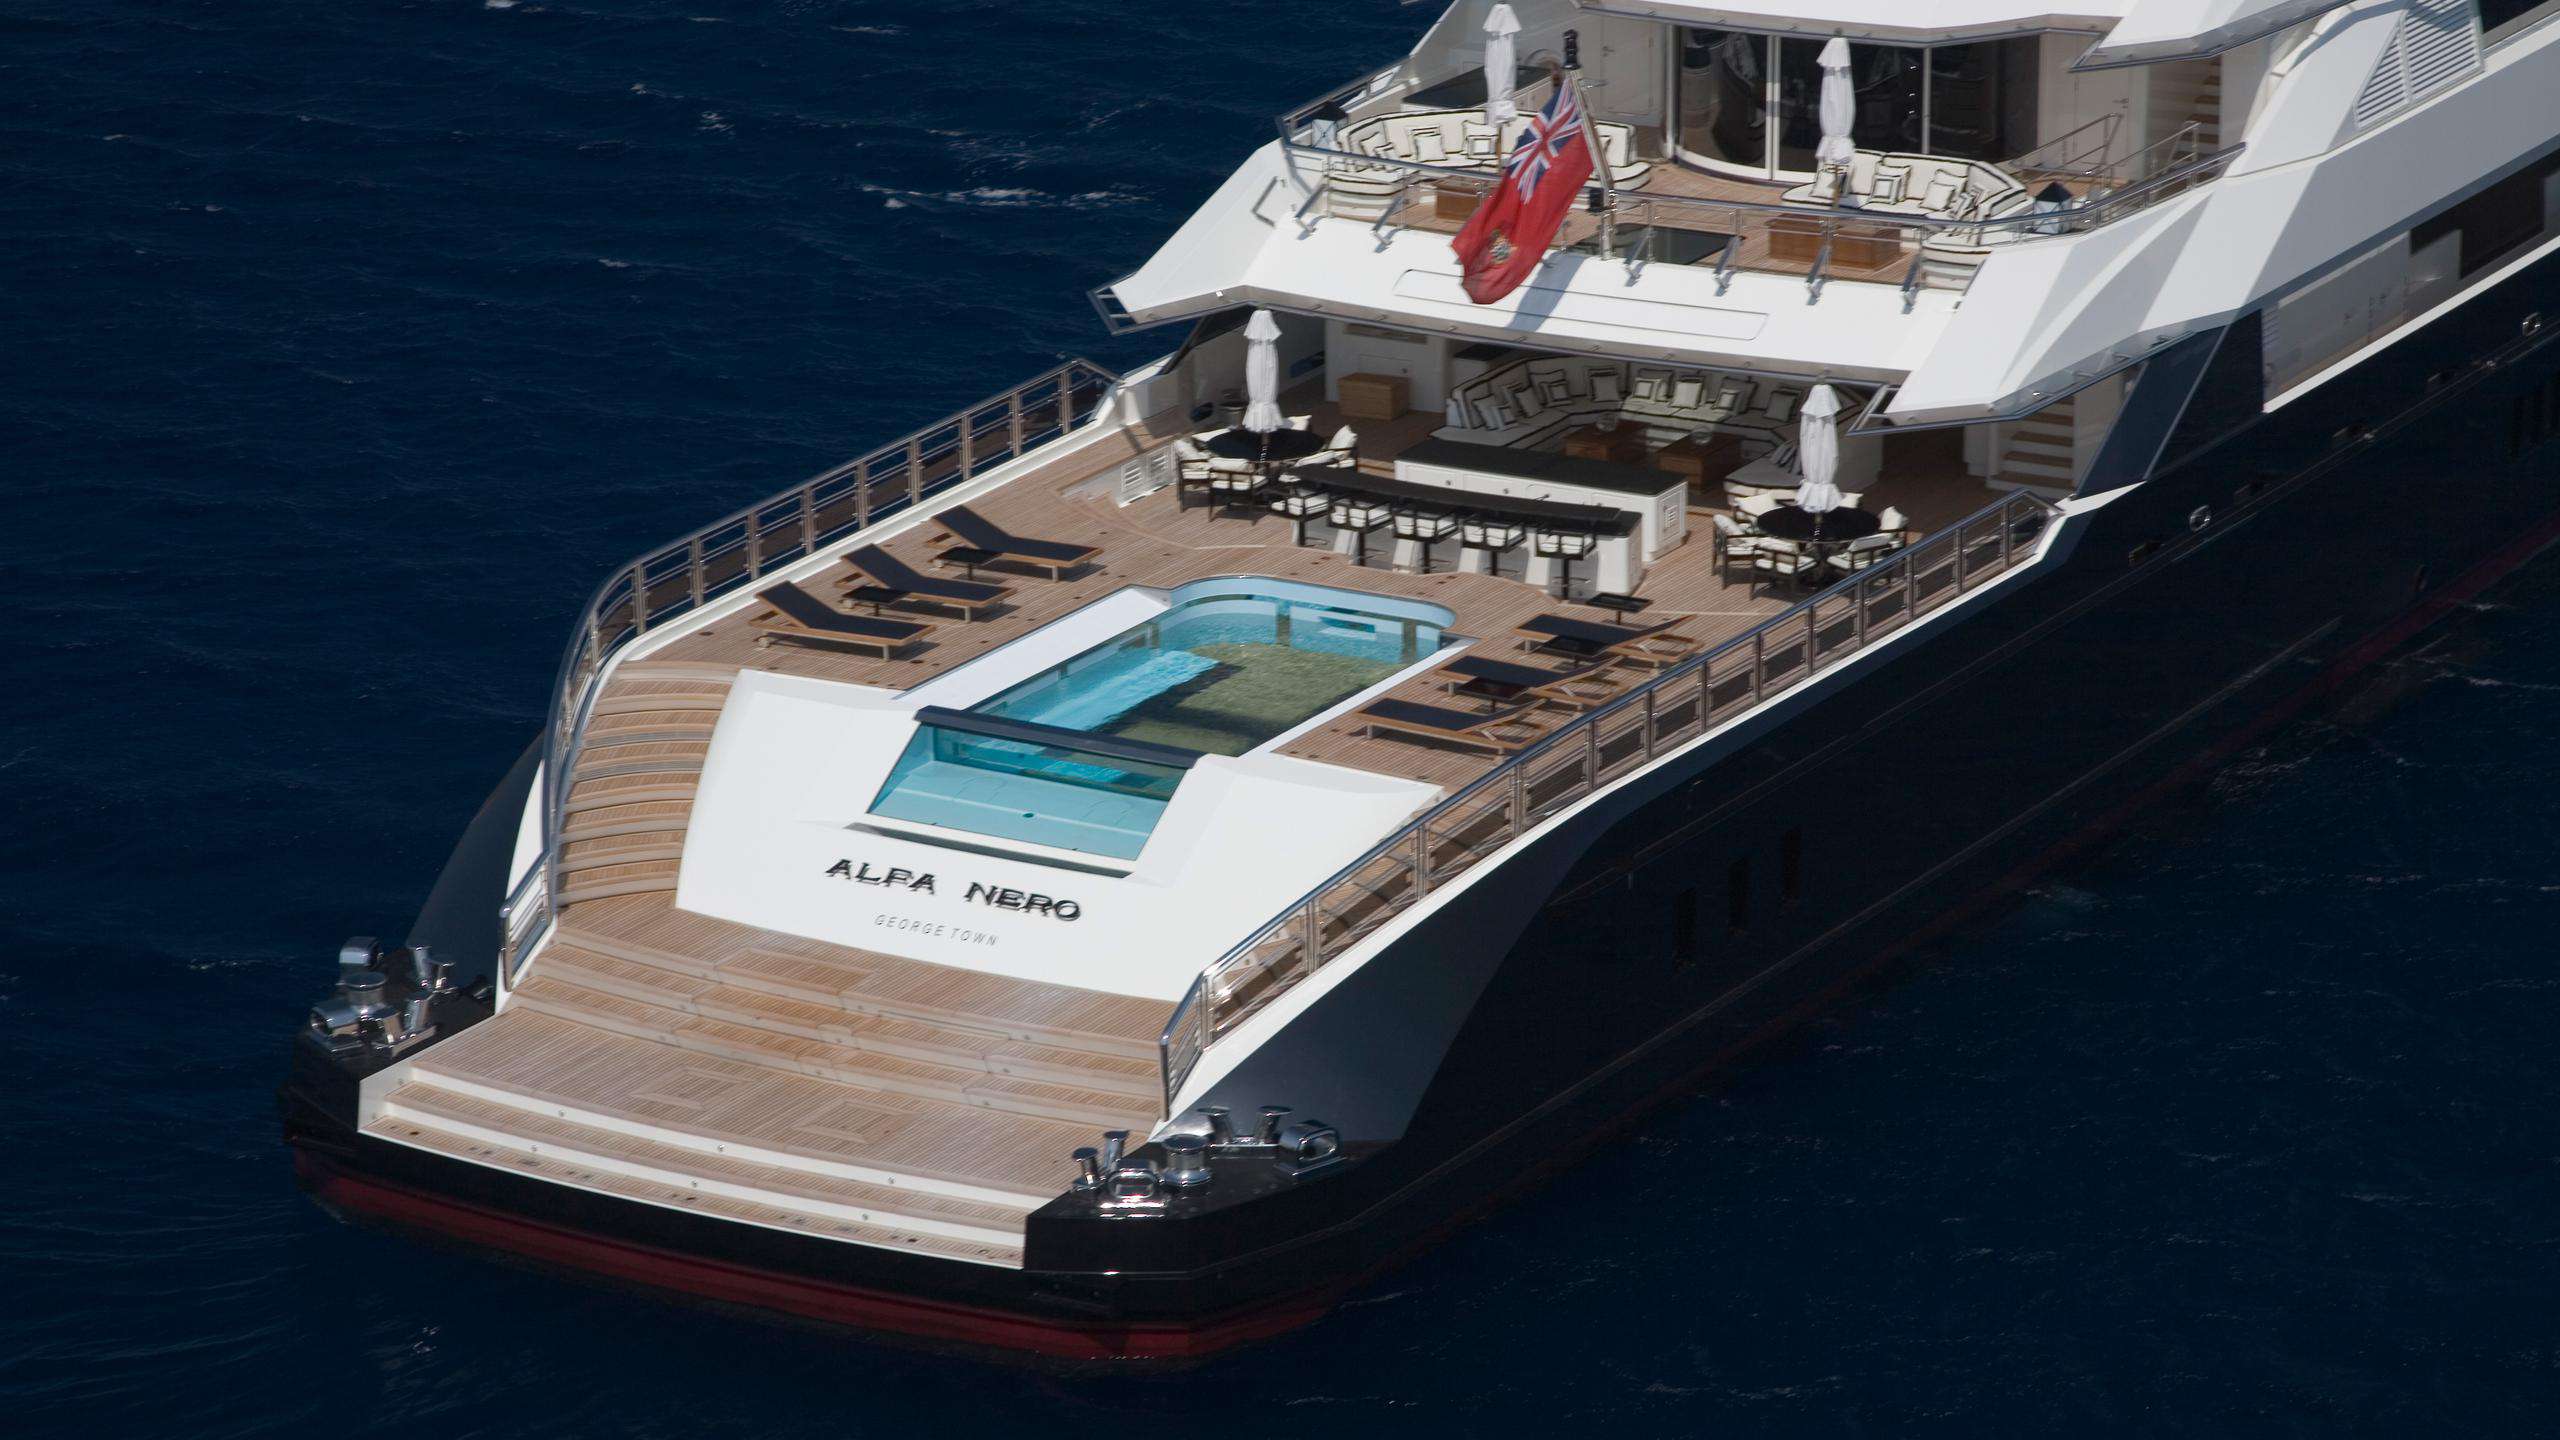 oceanco yacht alfa nero price